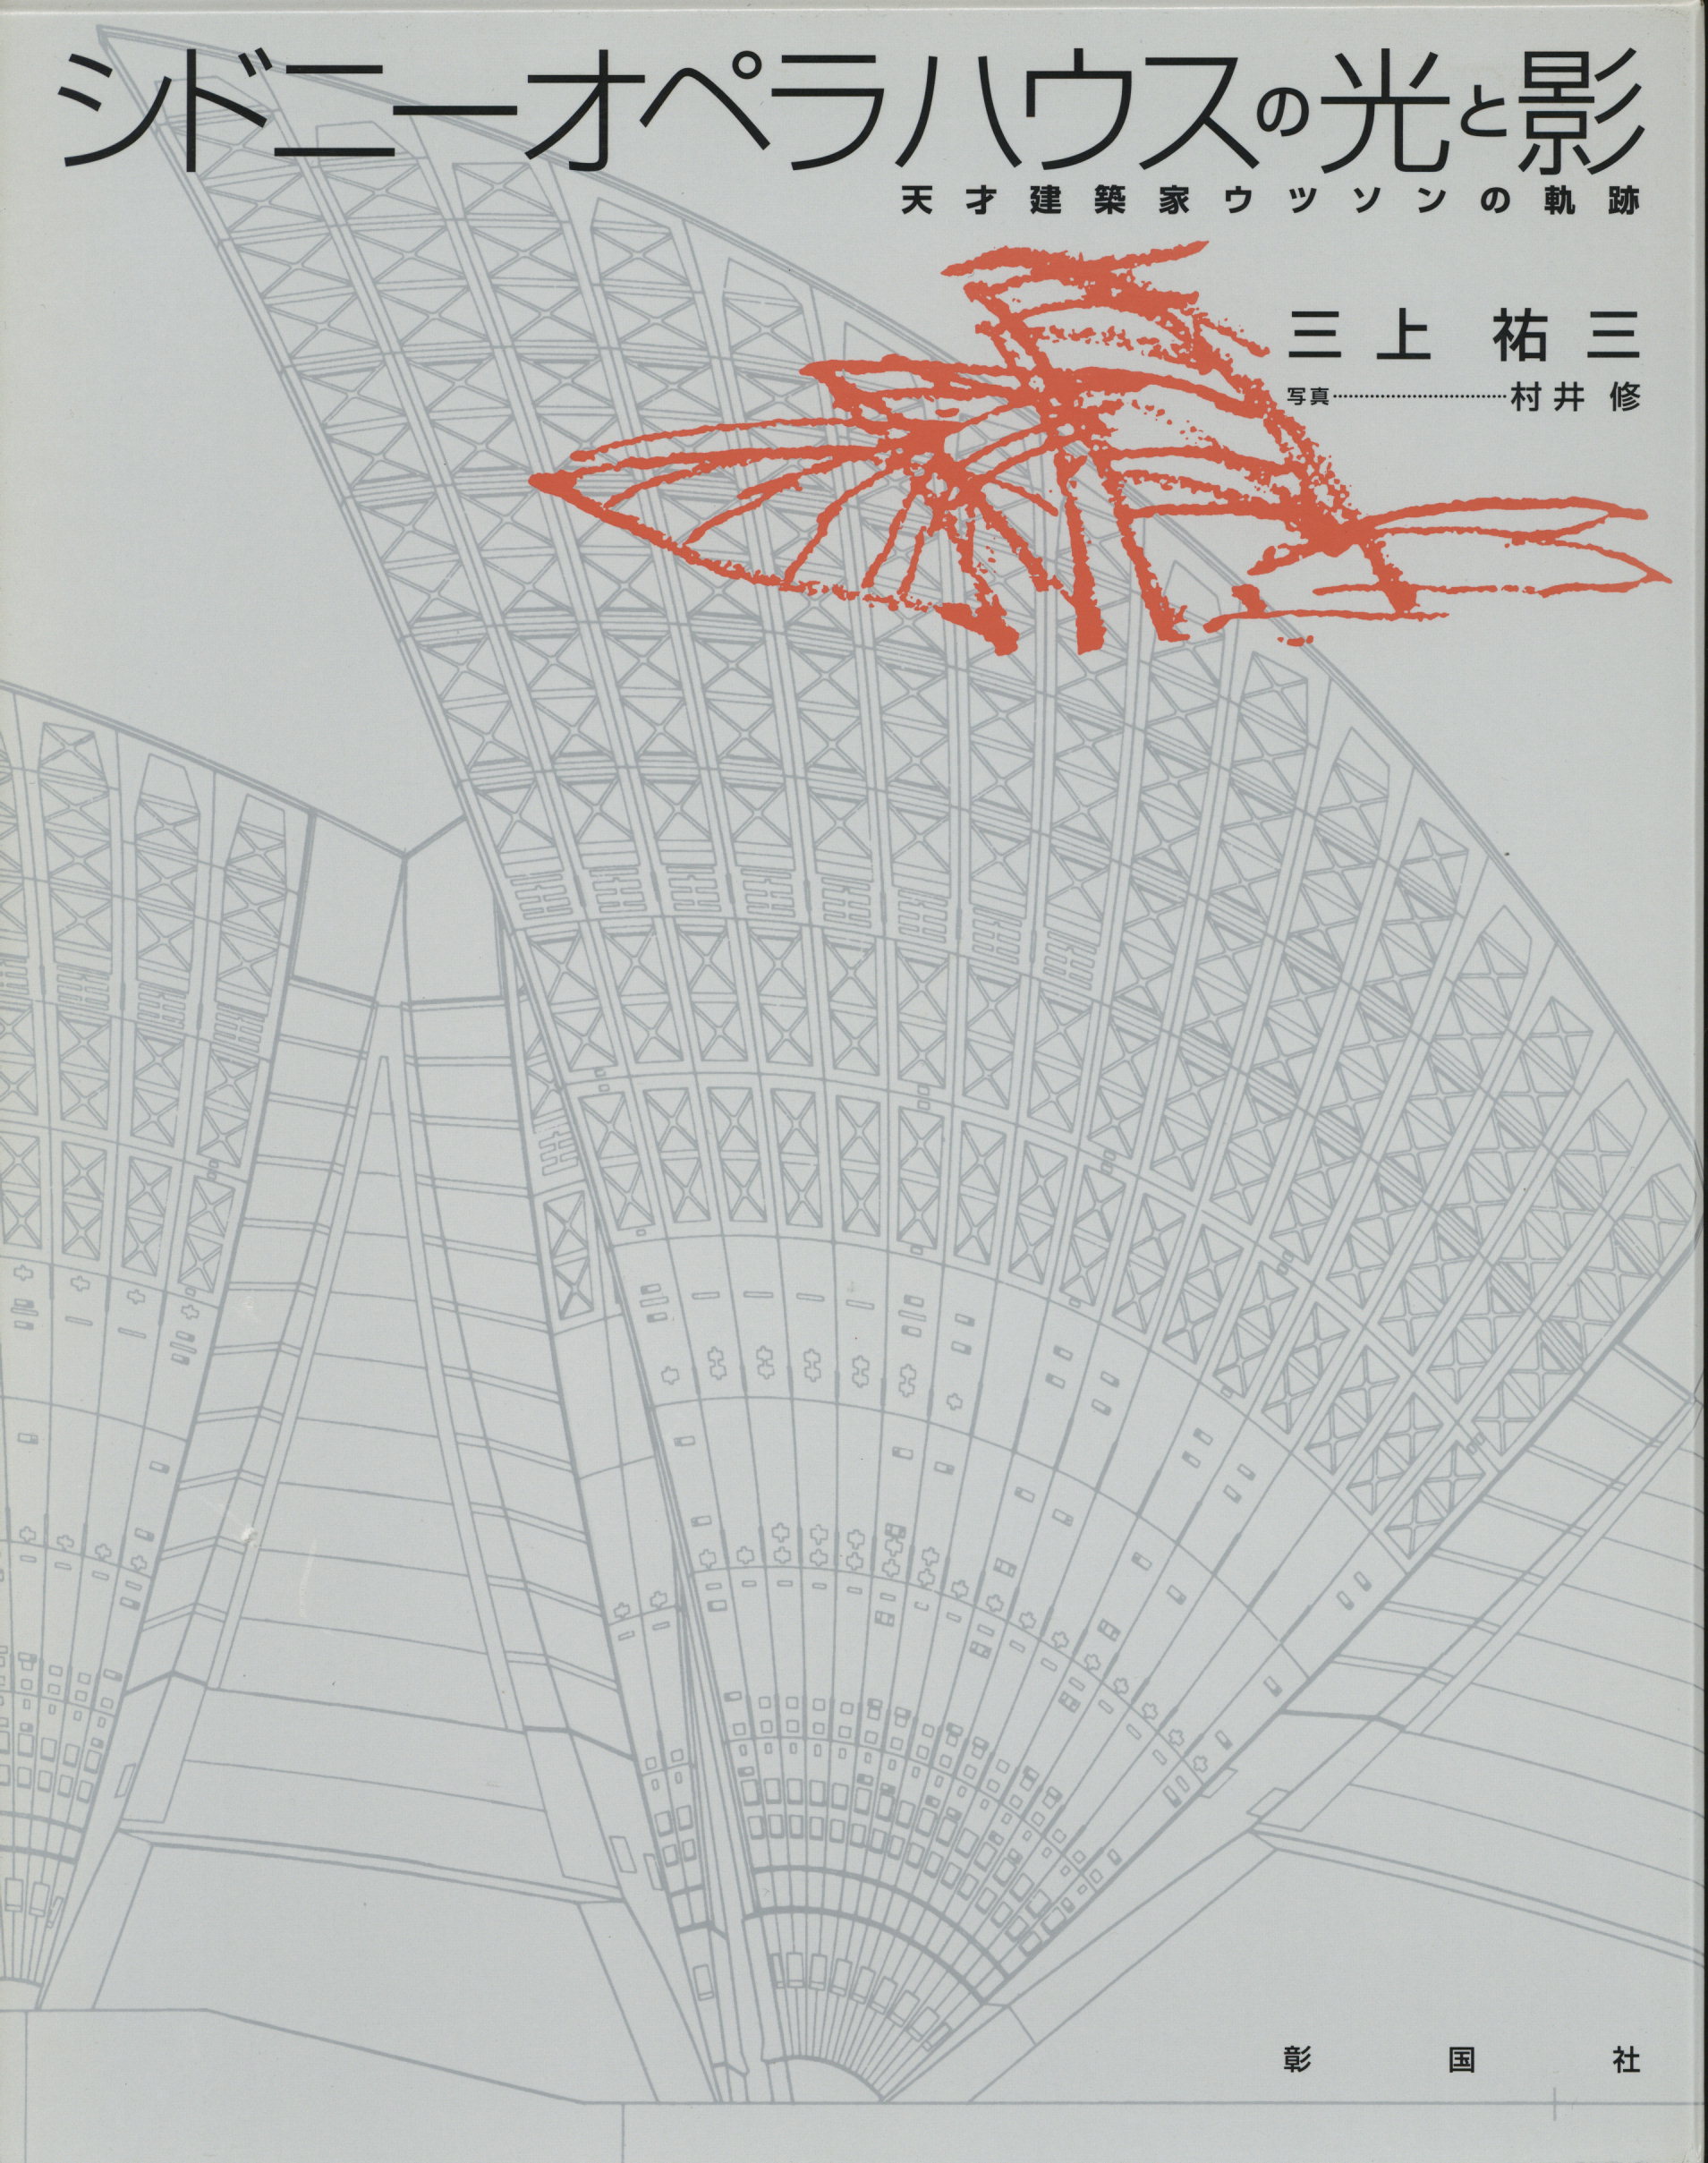 三上祐三的著作《シドニー・オペラハウスの光と影　天才建築家ウツソンの軌跡》Yuzo Mikami trajectory of the light and shadow genius architect Utsuson of the Sydney Opera House